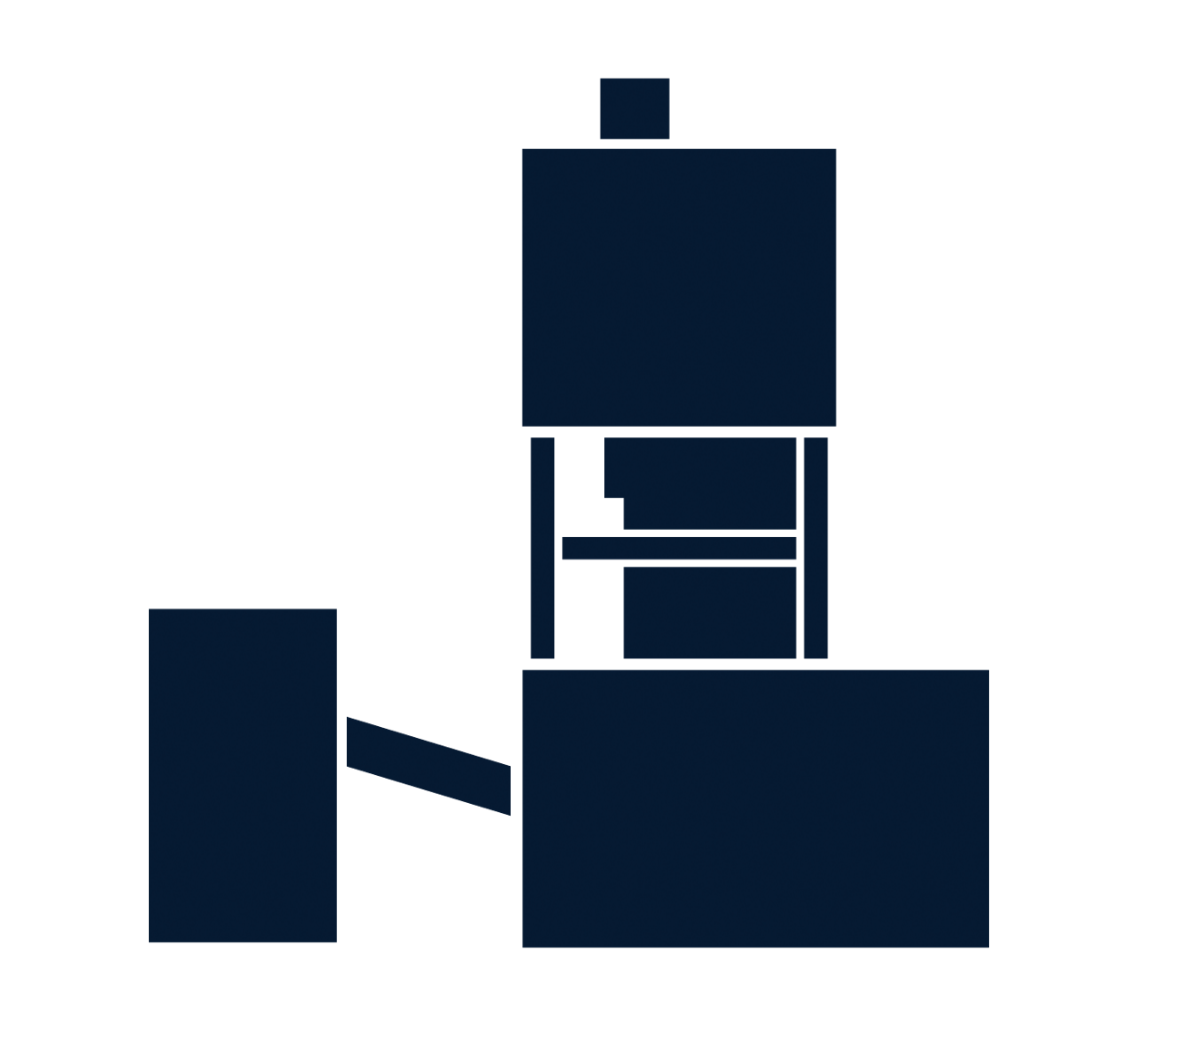 Grafisches, blaues Symbol, welches den Förderturm des Bergwerks Gorleben in schematisierter Form darstellt.